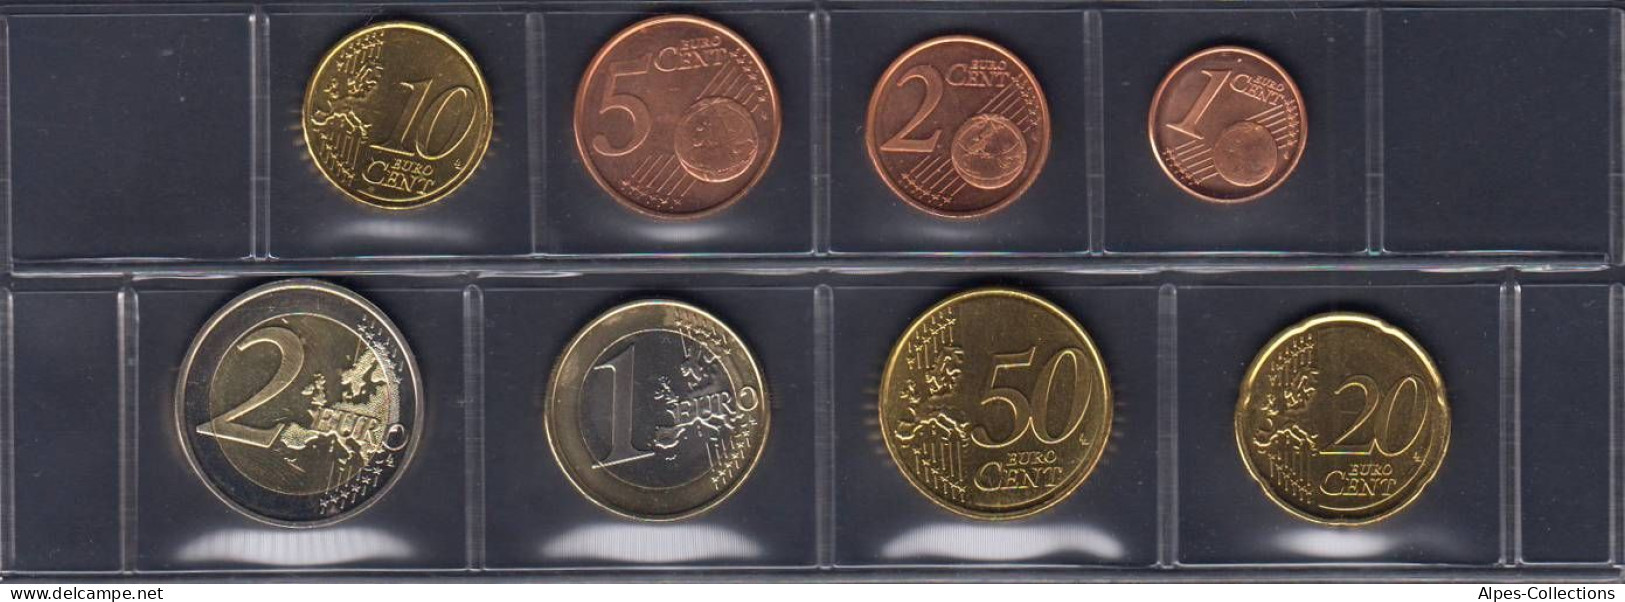 FIX2009.3 - SERIE FINLANDE - 2009 - 1 Cent à 2 Euros - Finland